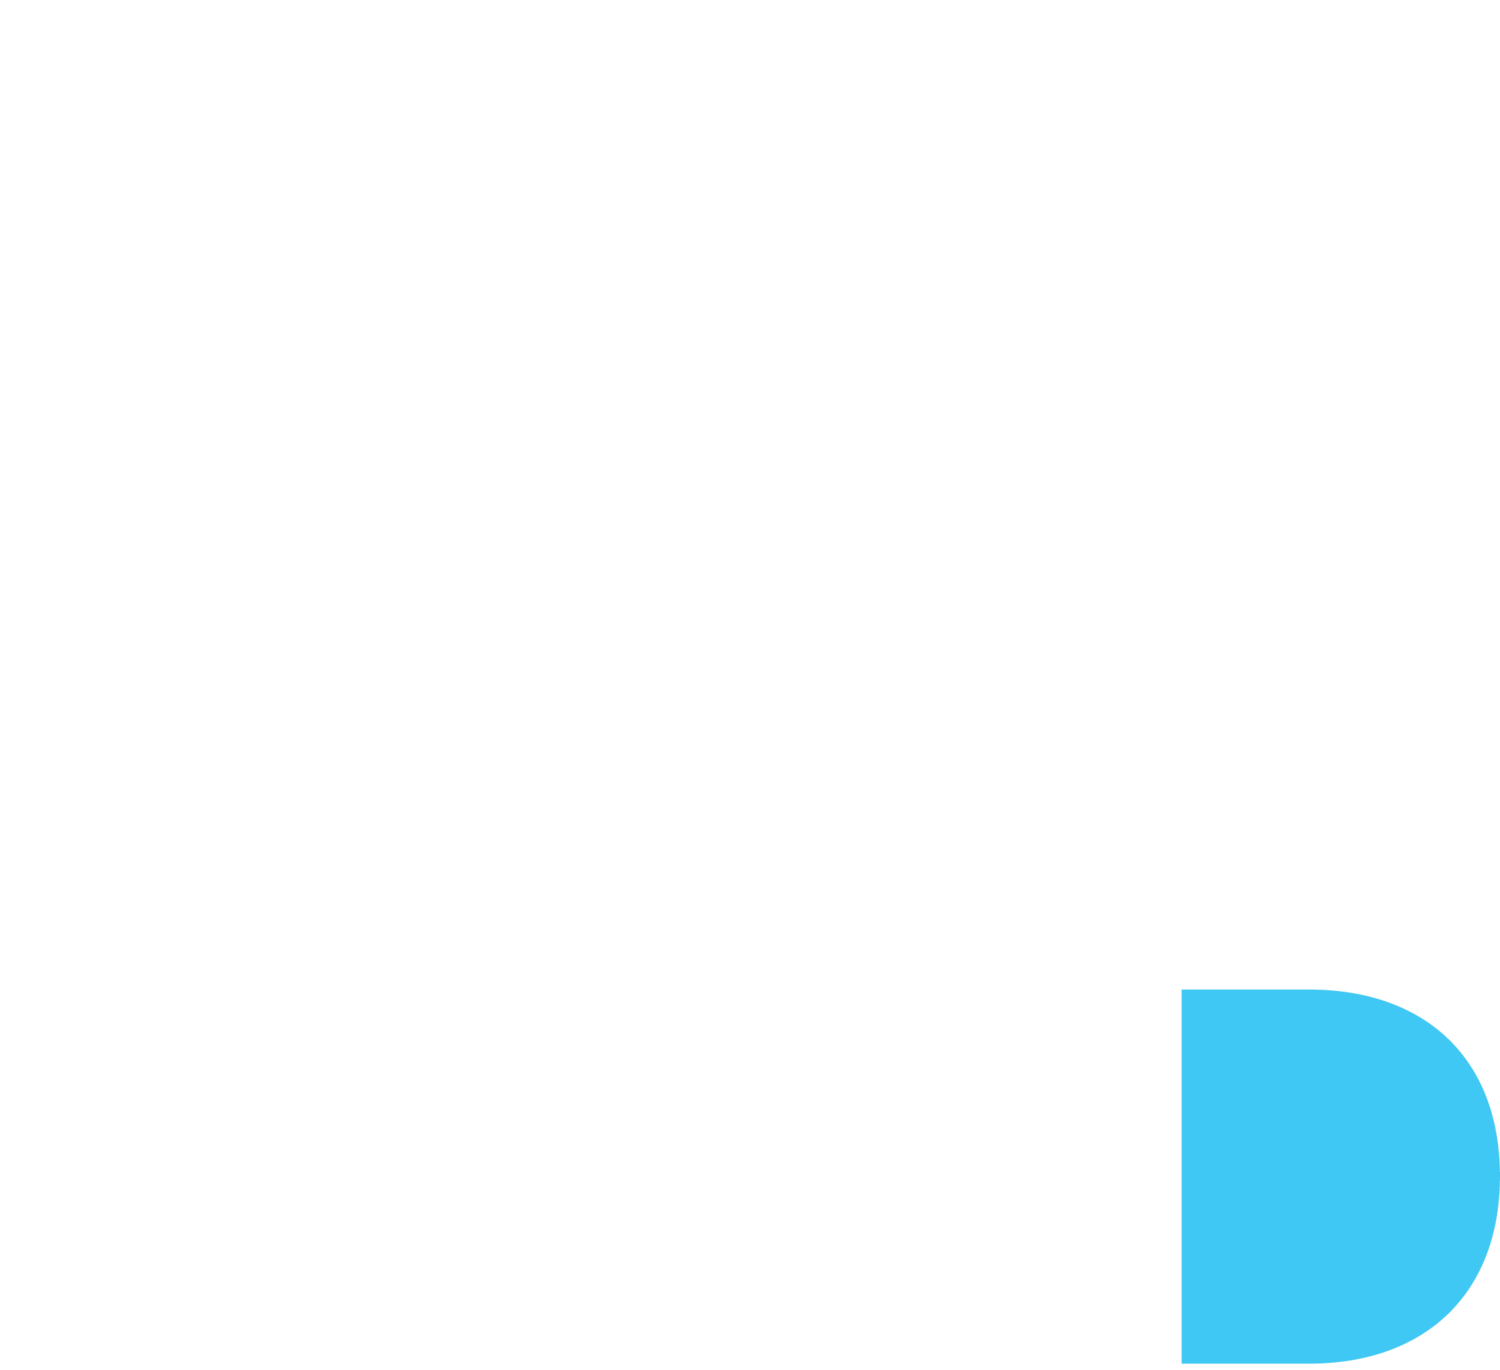 REFASHIOND Ventures